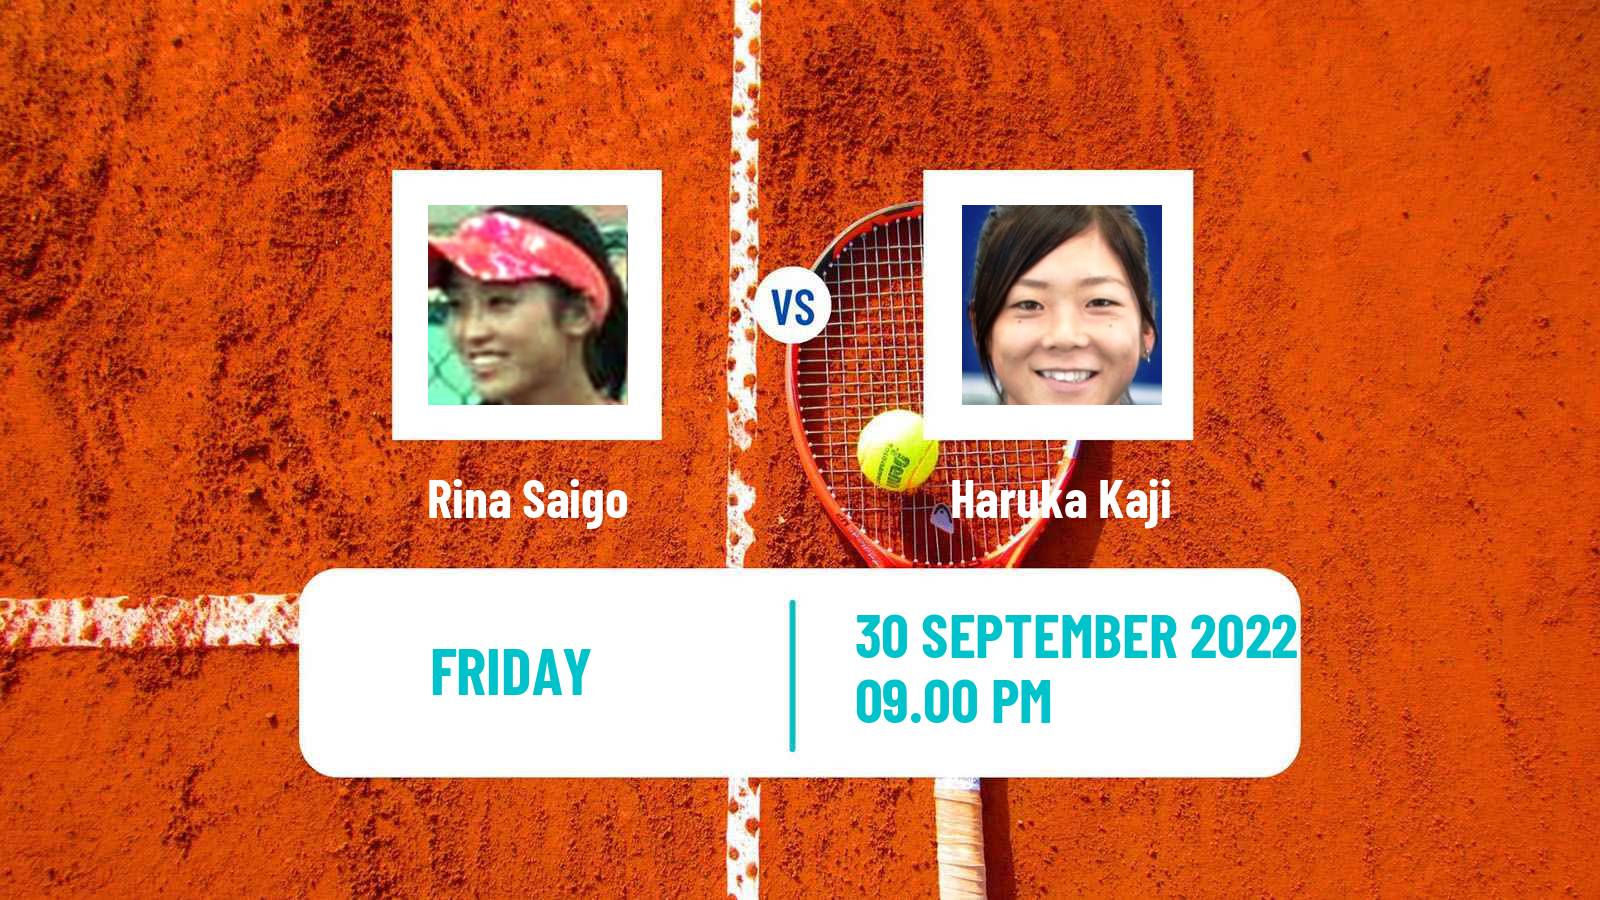 Tennis ITF Tournaments Rina Saigo - Haruka Kaji